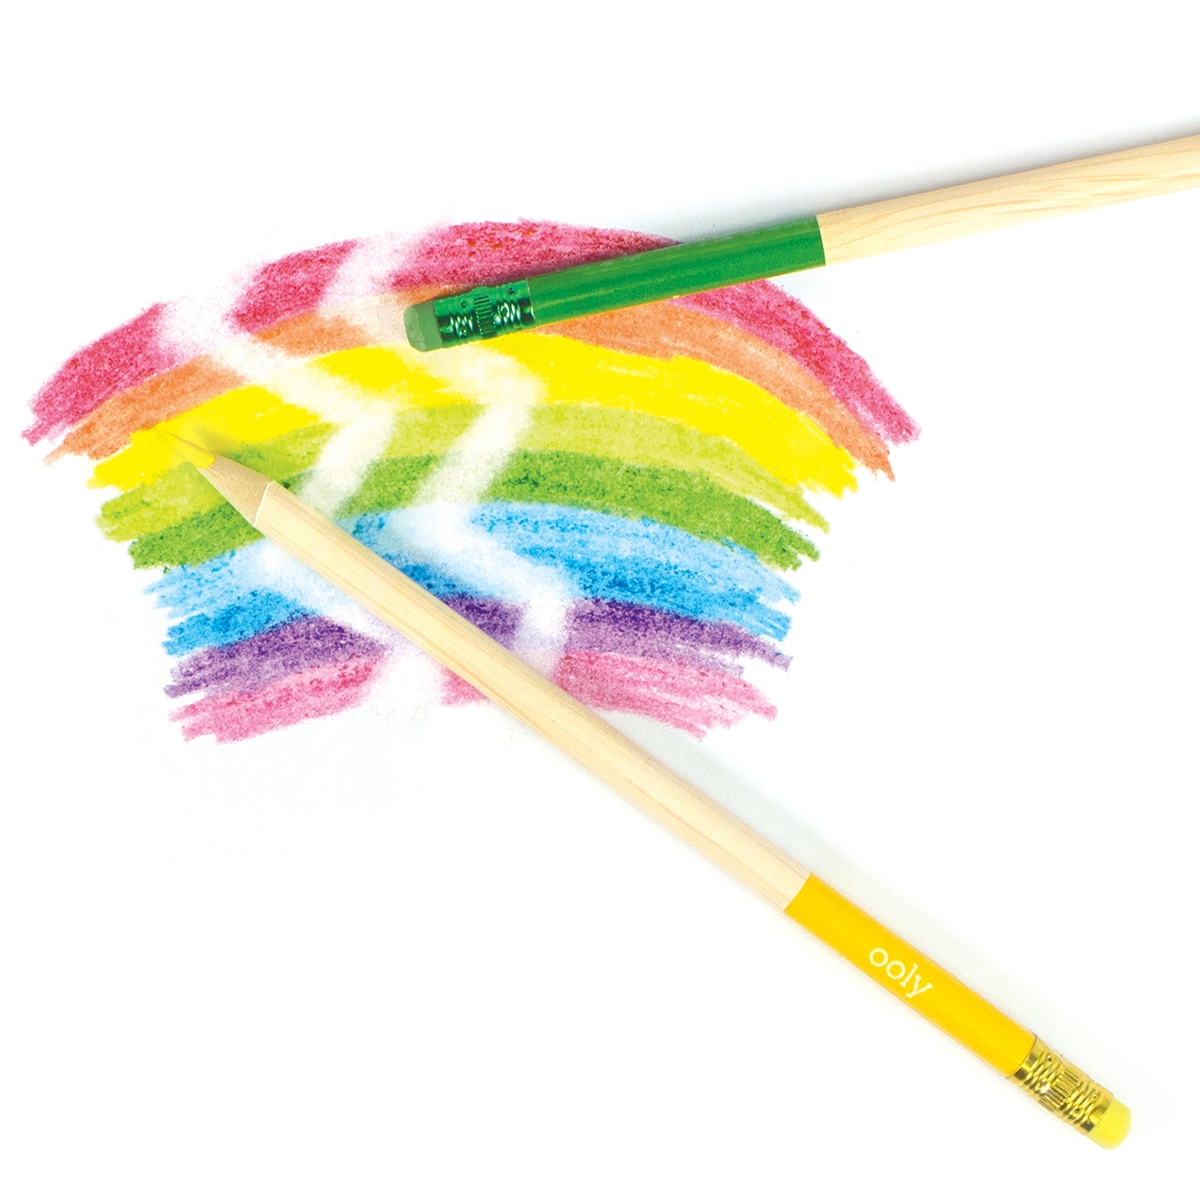 Un-Mistake-Ables Erasable Colored Pencils frn Ooly sljs p Presenteriet.se